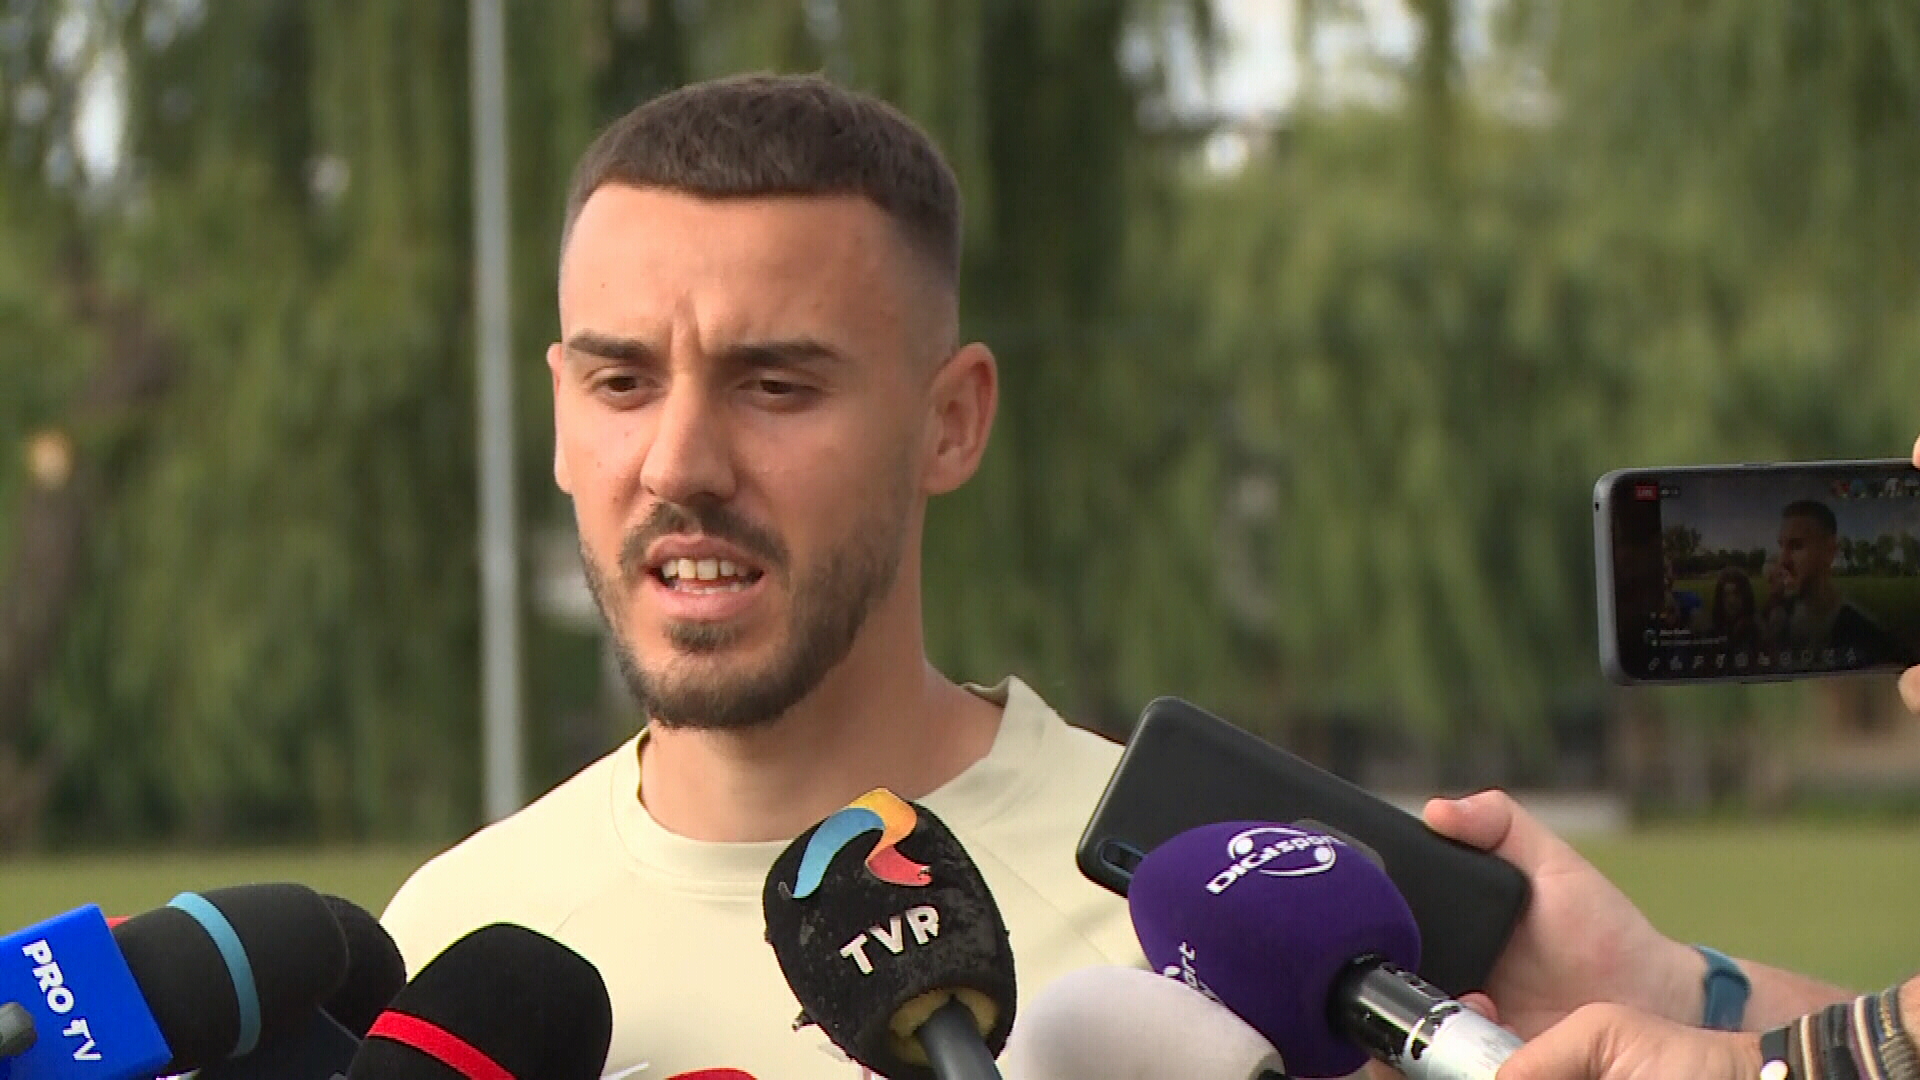 Răzvan Oaidă, pus în dificultate la reunirea Rapidului: ”Vei săruta steagul?” / ”Cu ce echipă țineai?”